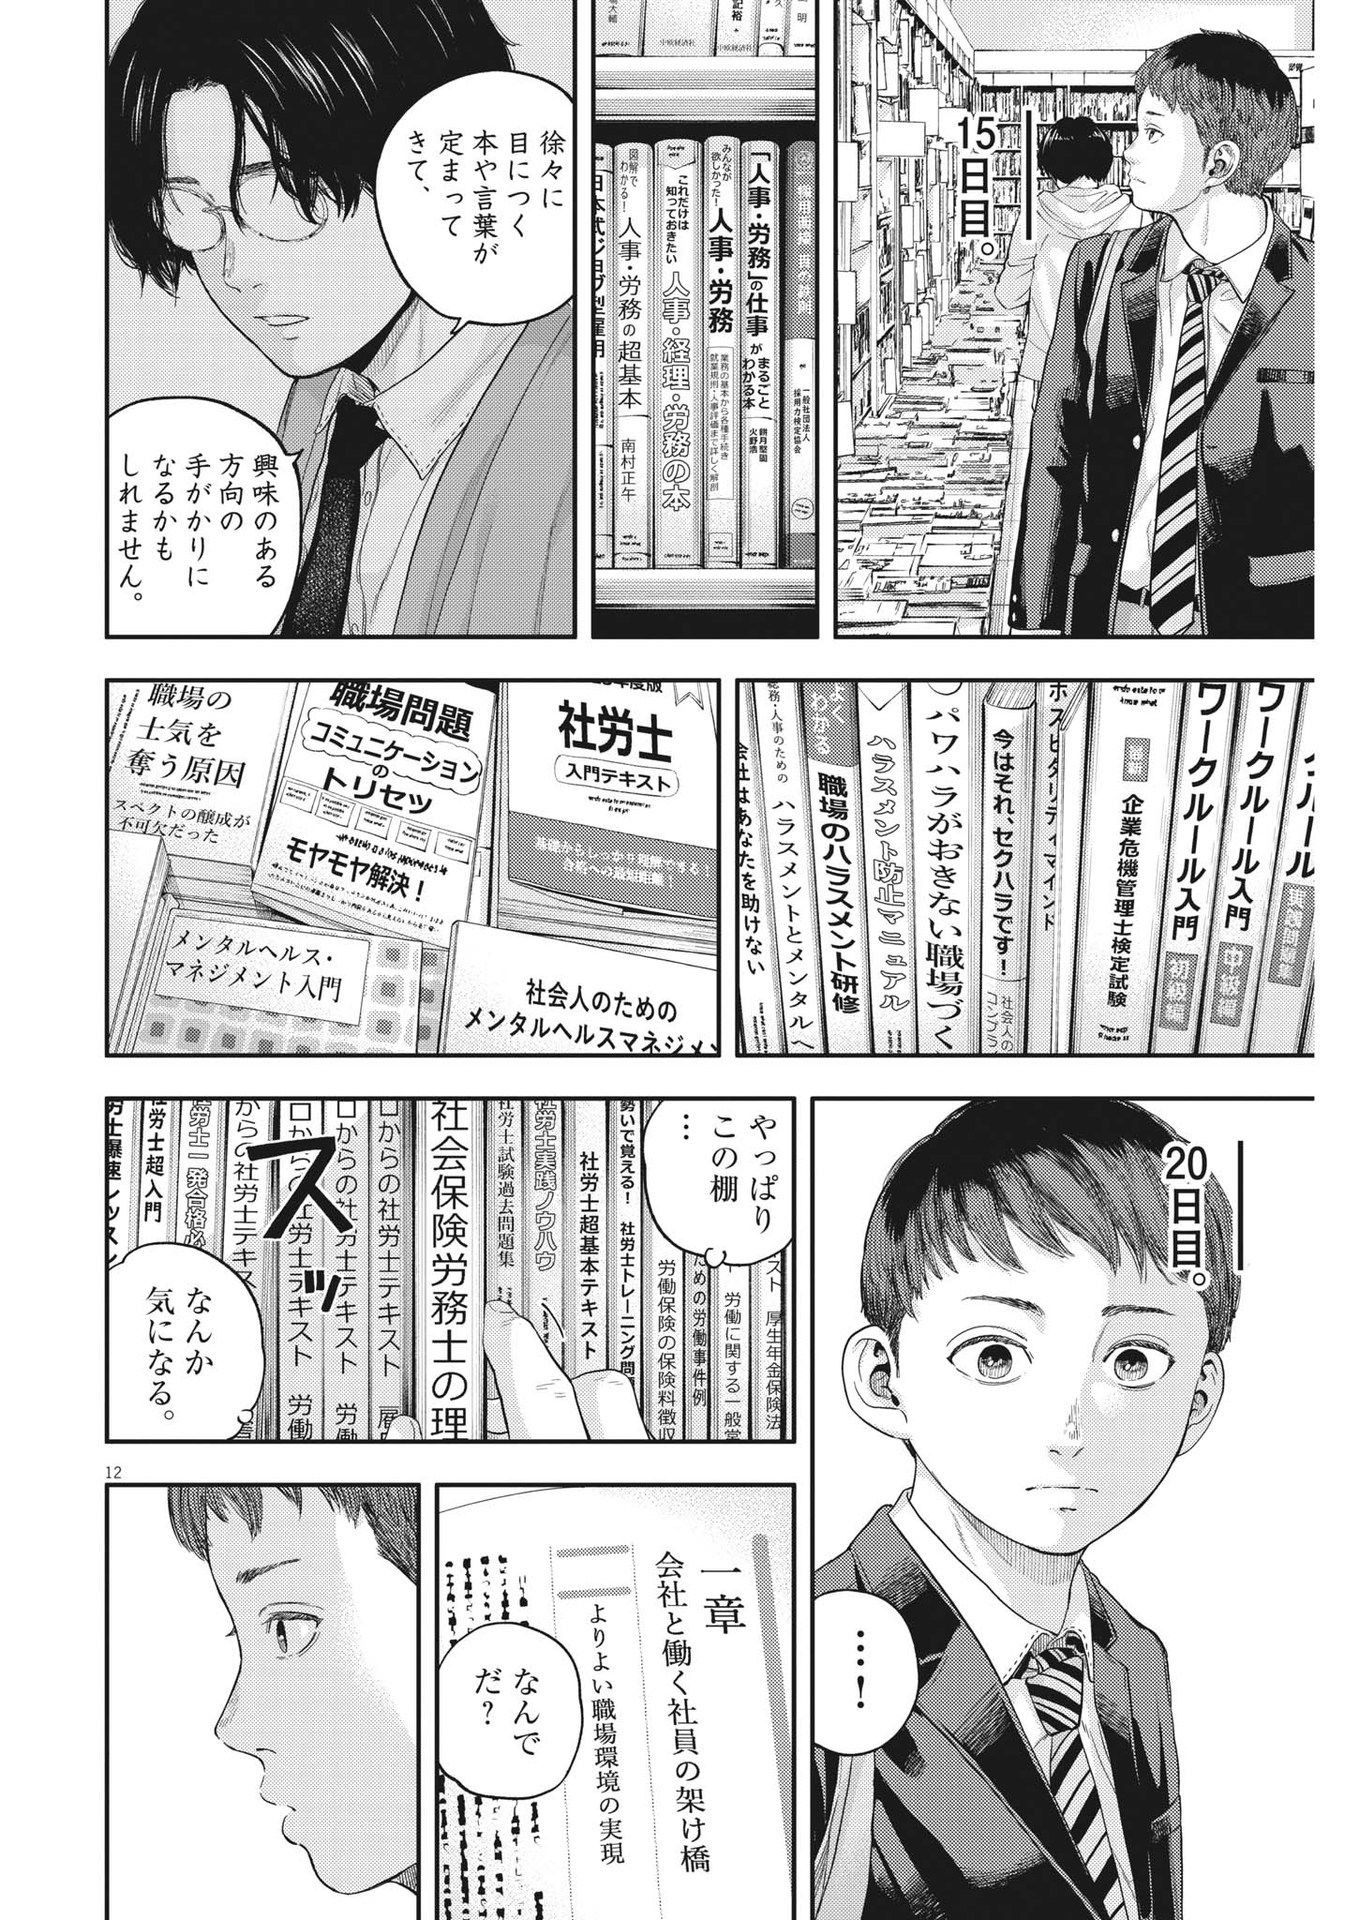 Yumenashi-sensei no Shinroshidou - Chapter 20 - Page 12